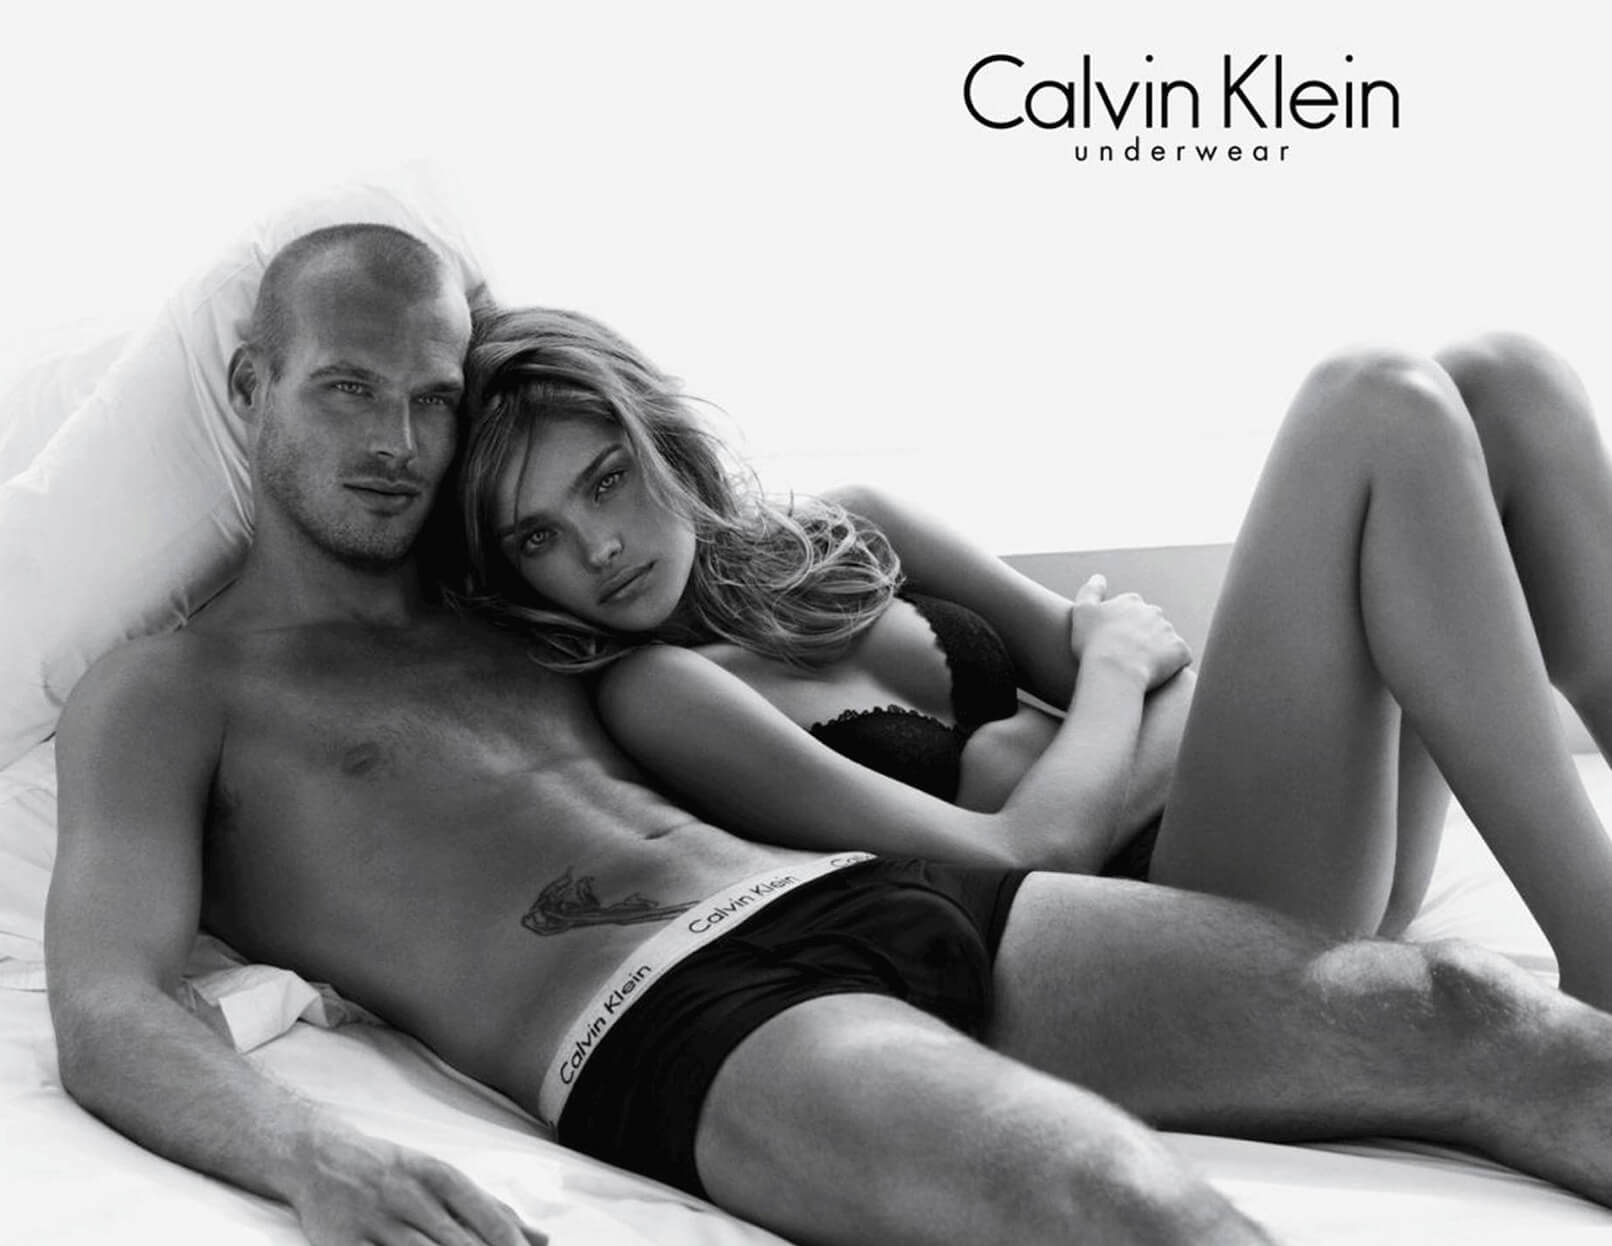 Calvin Klein Underwear – Berkowitz Studio